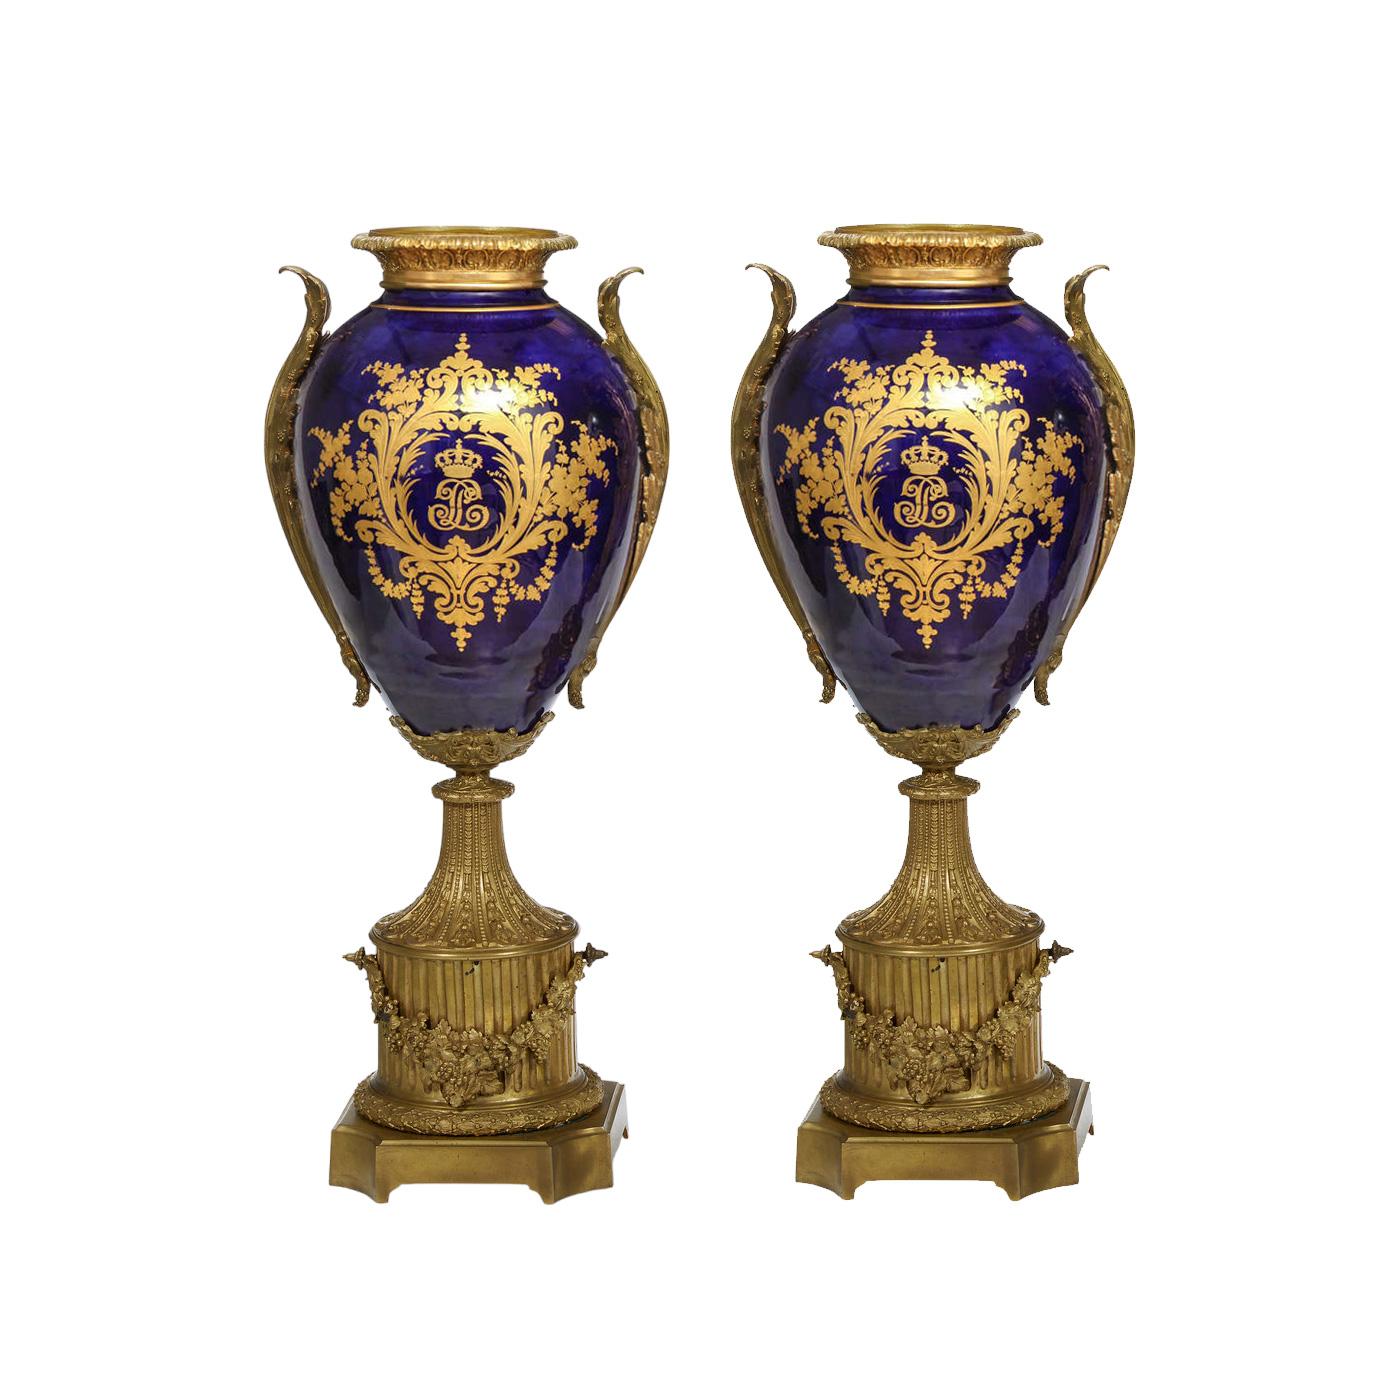 Cette impressionnante paire de vases monumentaux en porcelaine ancienne témoigne de l'opulence de l'artisanat français dans un style rappelant la porcelaine de Sèvres, datant d'environ 1850. Les vases sont de forme balustre traditionnelle. Chaque